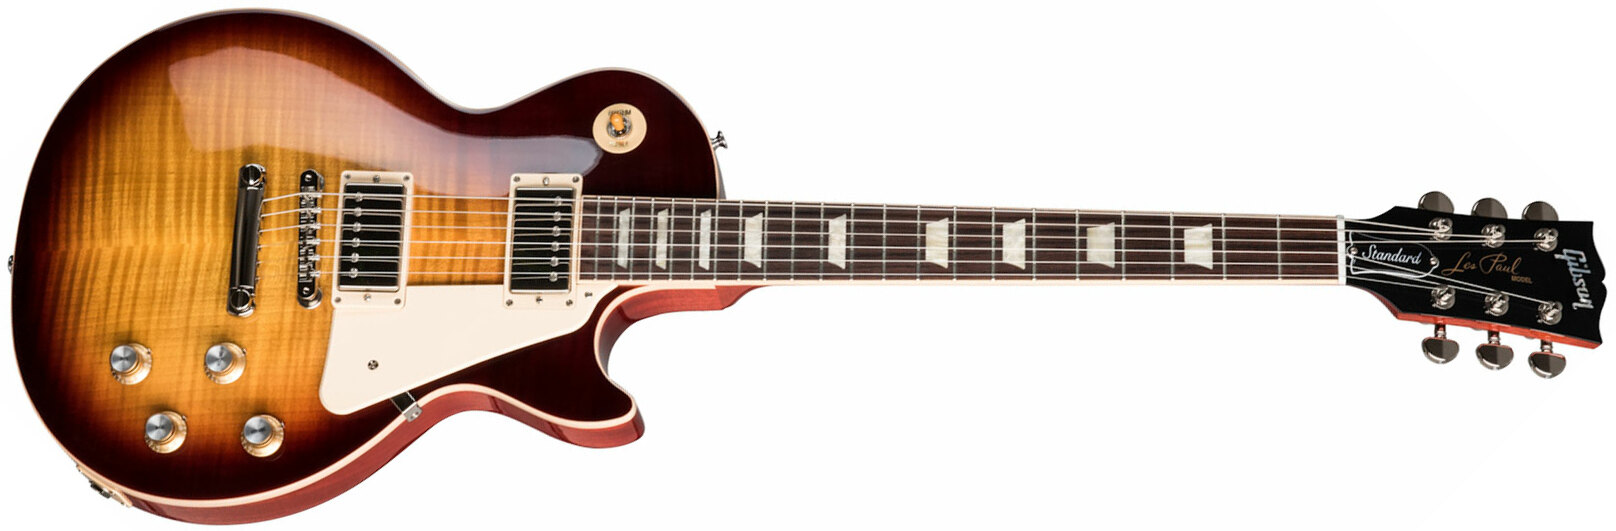 Gibson Les Paul Standard 60s Original 2h Ht Rw - Bourbon Burst - Single cut electric guitar - Main picture